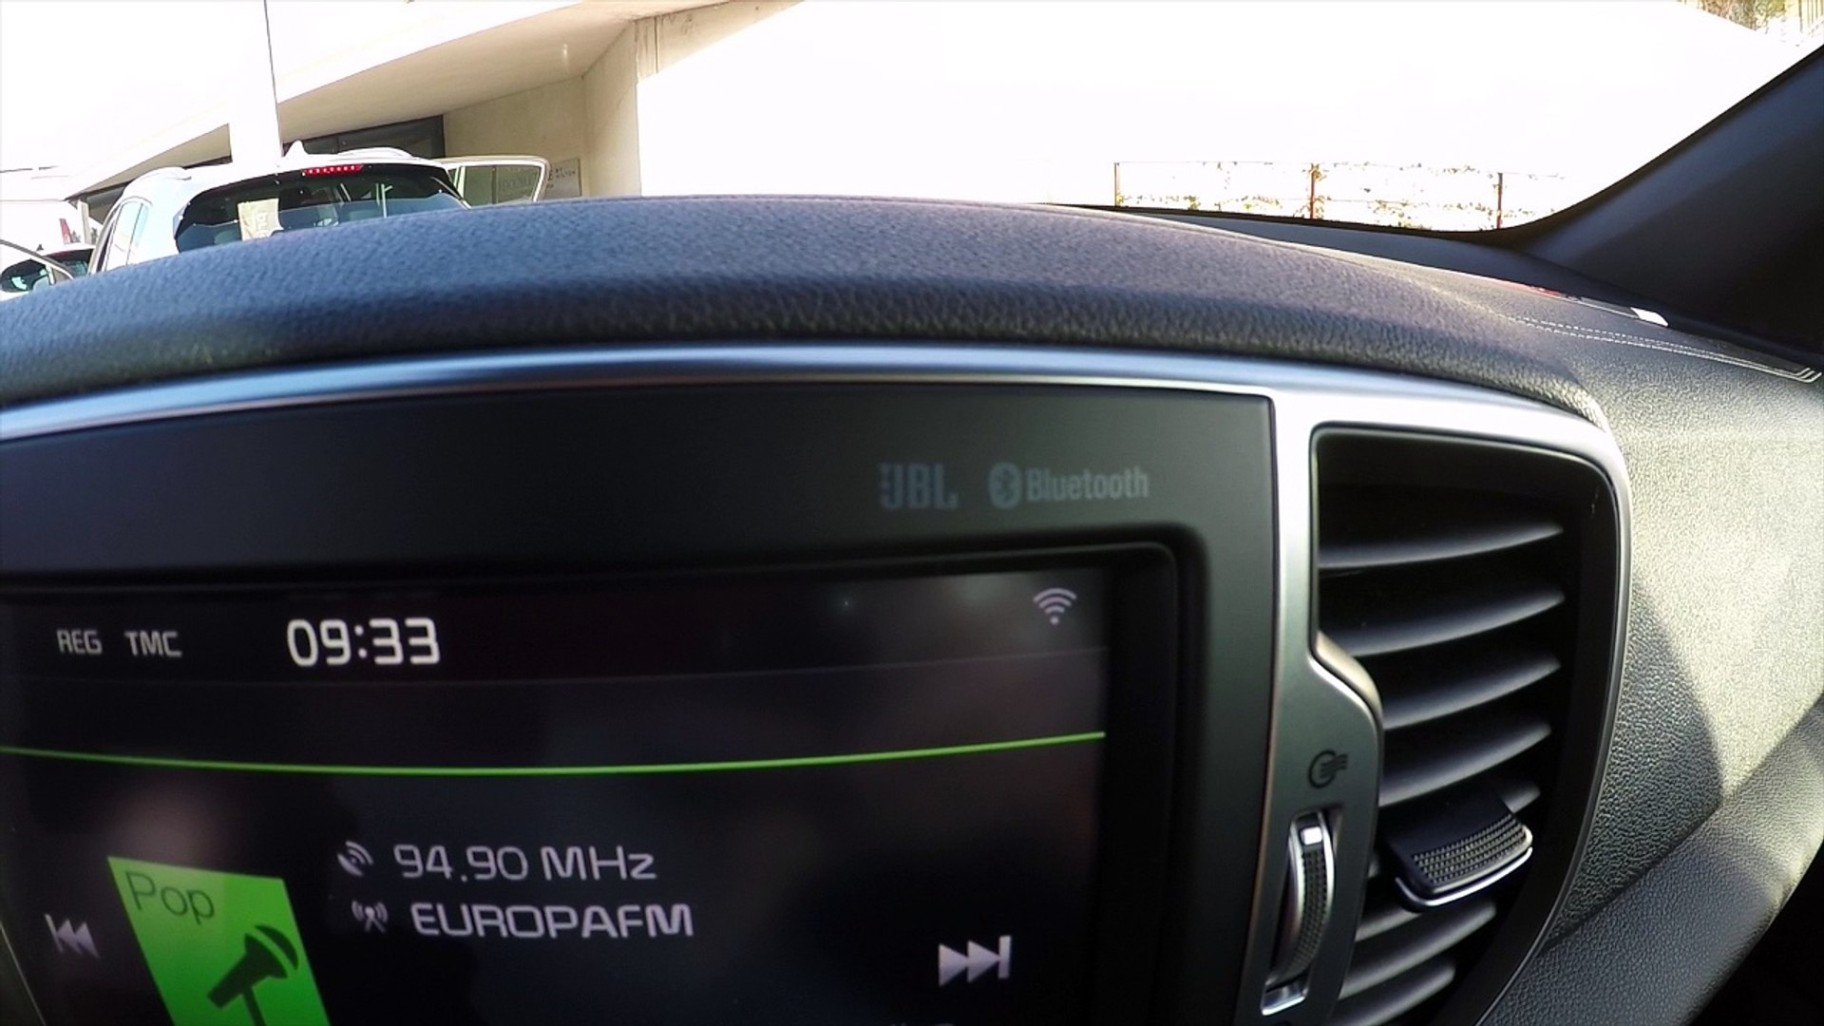 Kia Sportage JBL sound system with Clari Fi